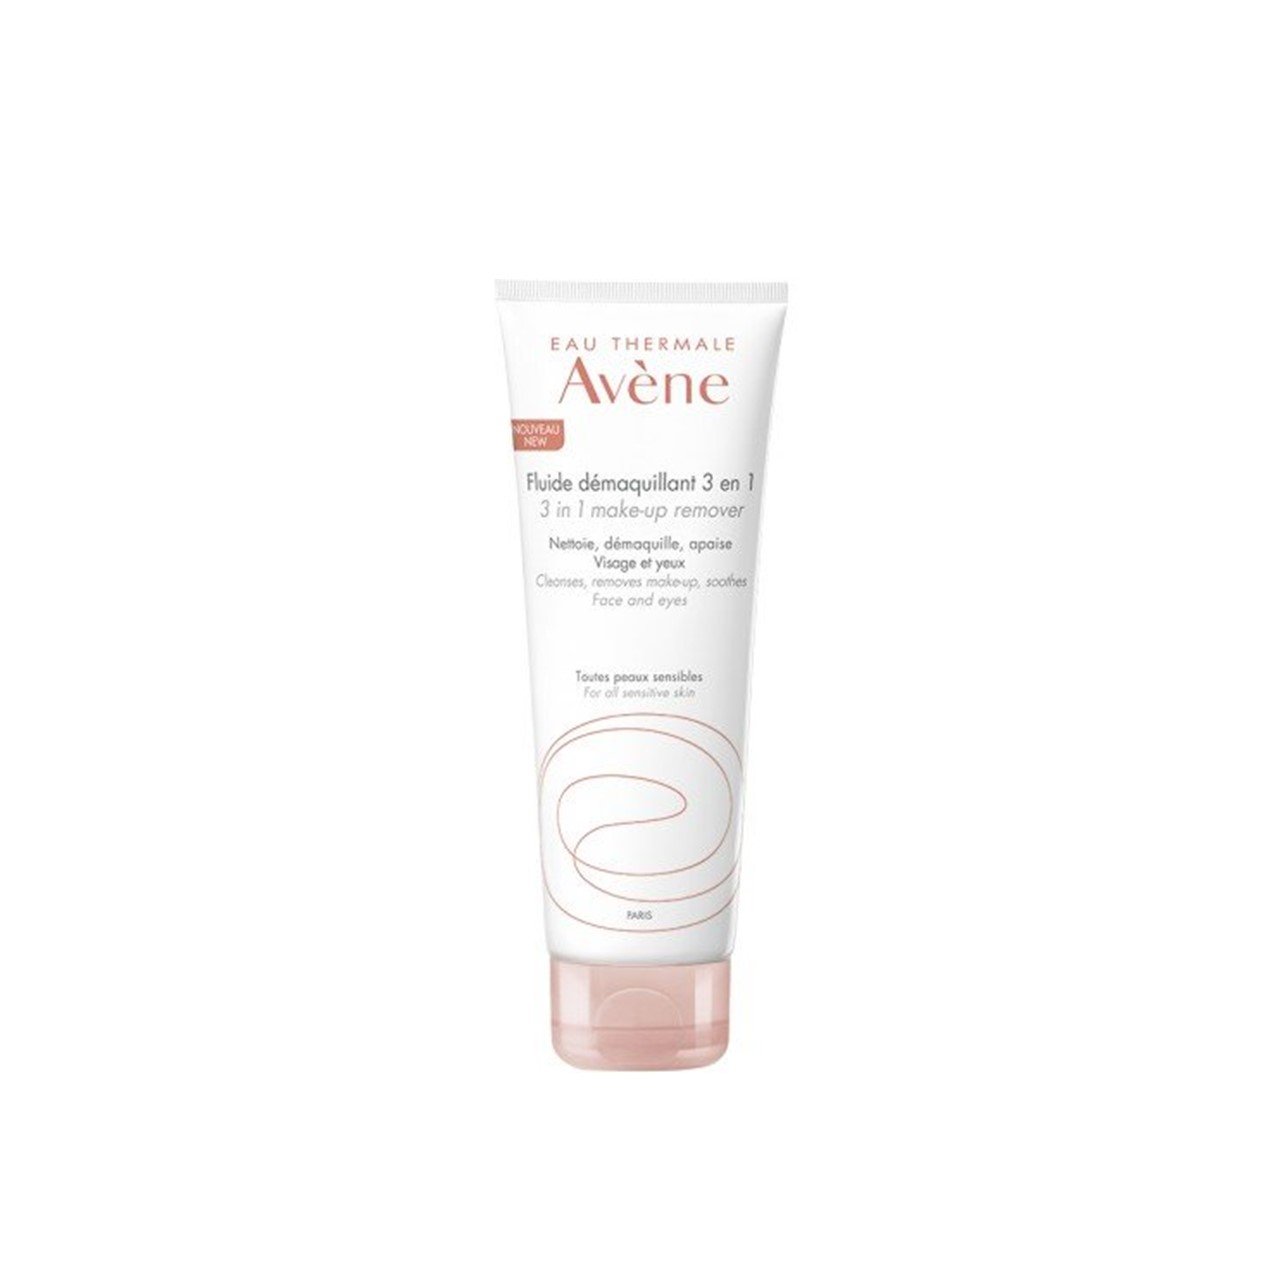 Avène 3 in 1 Make-Up Remover Sensitive Skin 200ml (6.76fl oz)